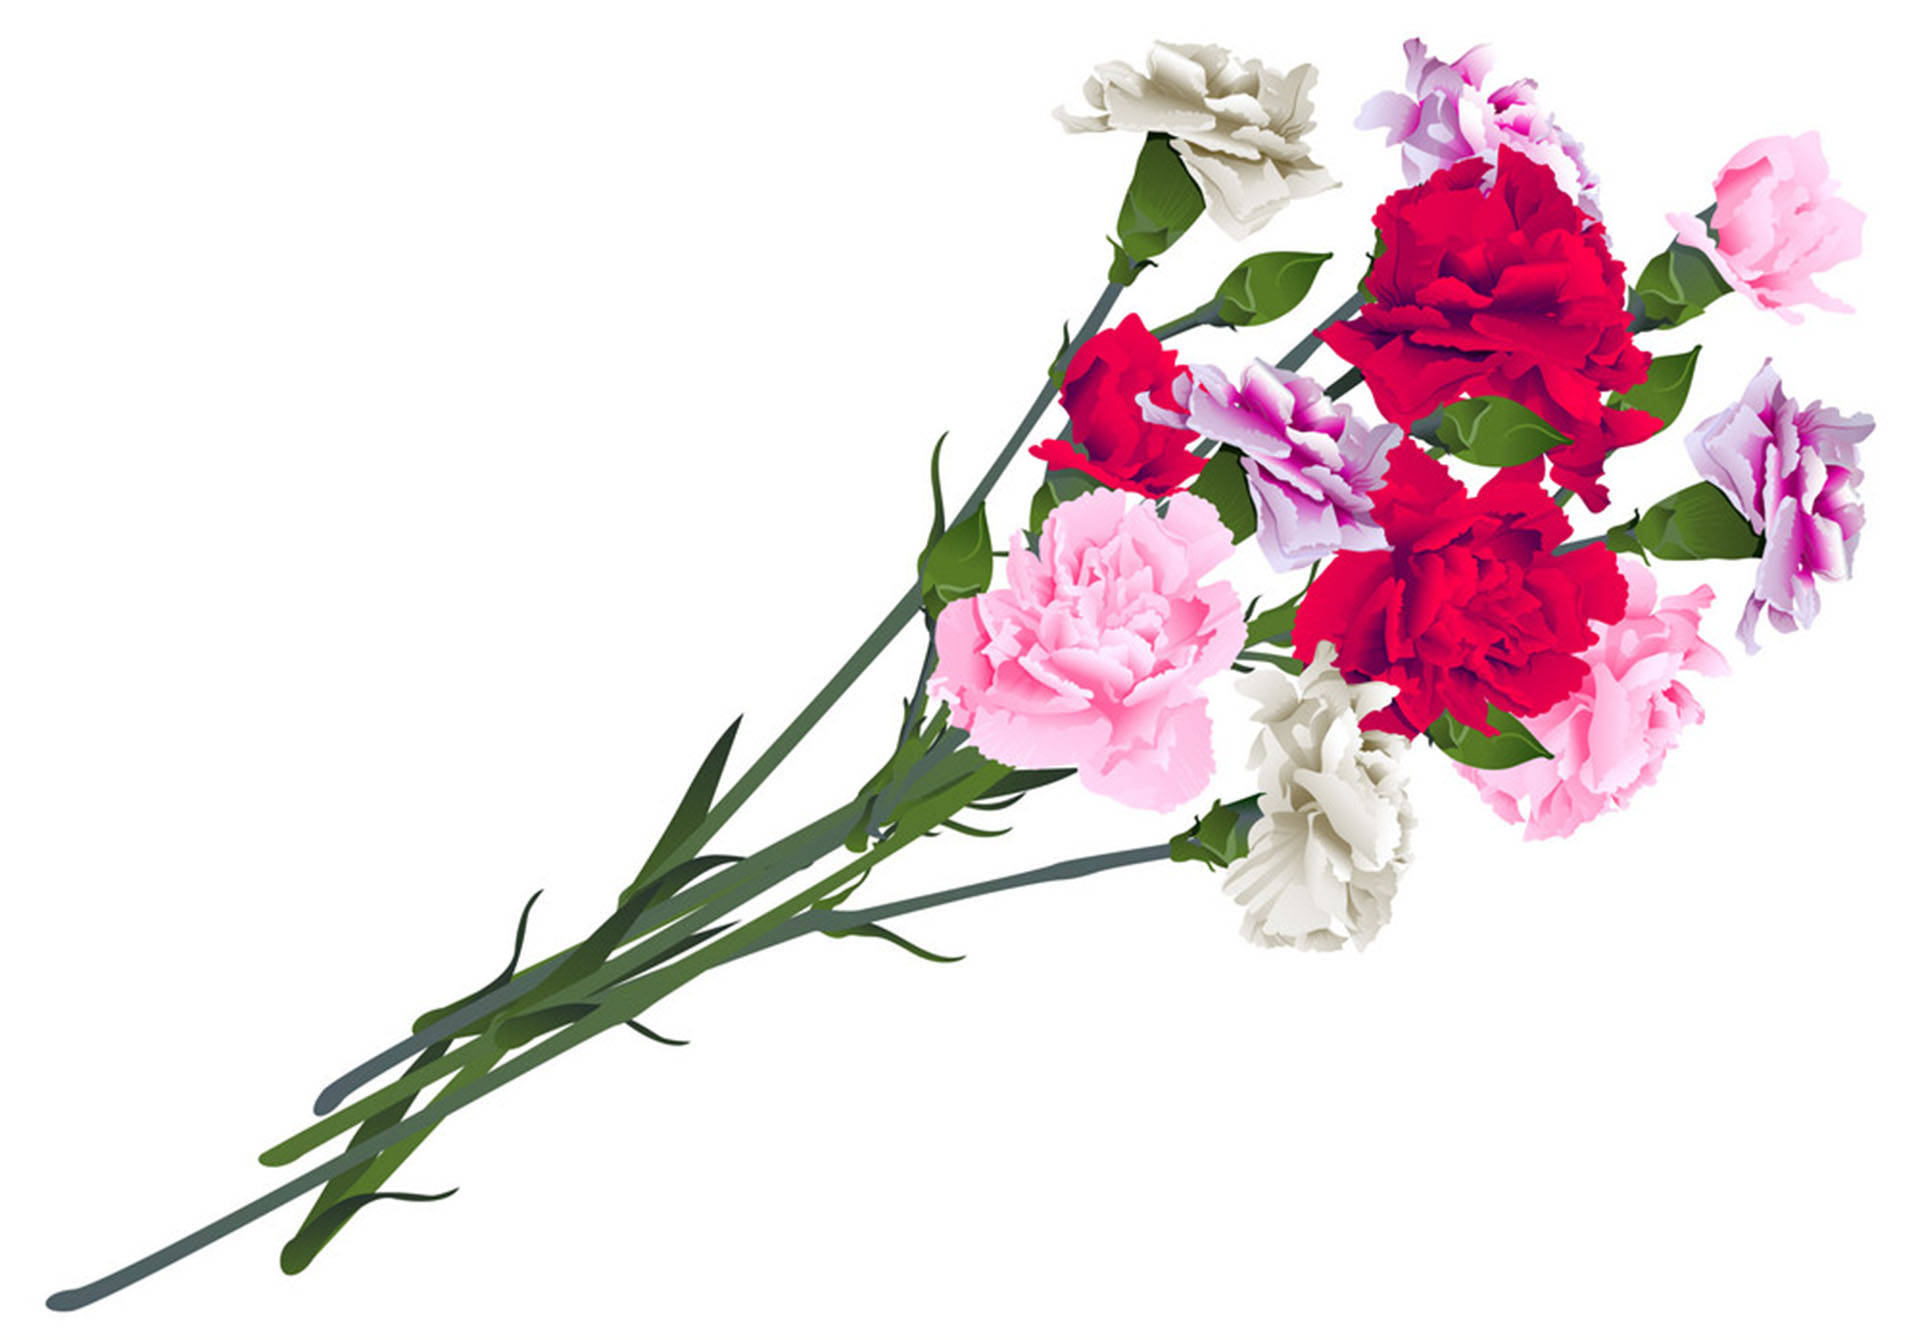 Carnation Blomster Stem Wallpaper